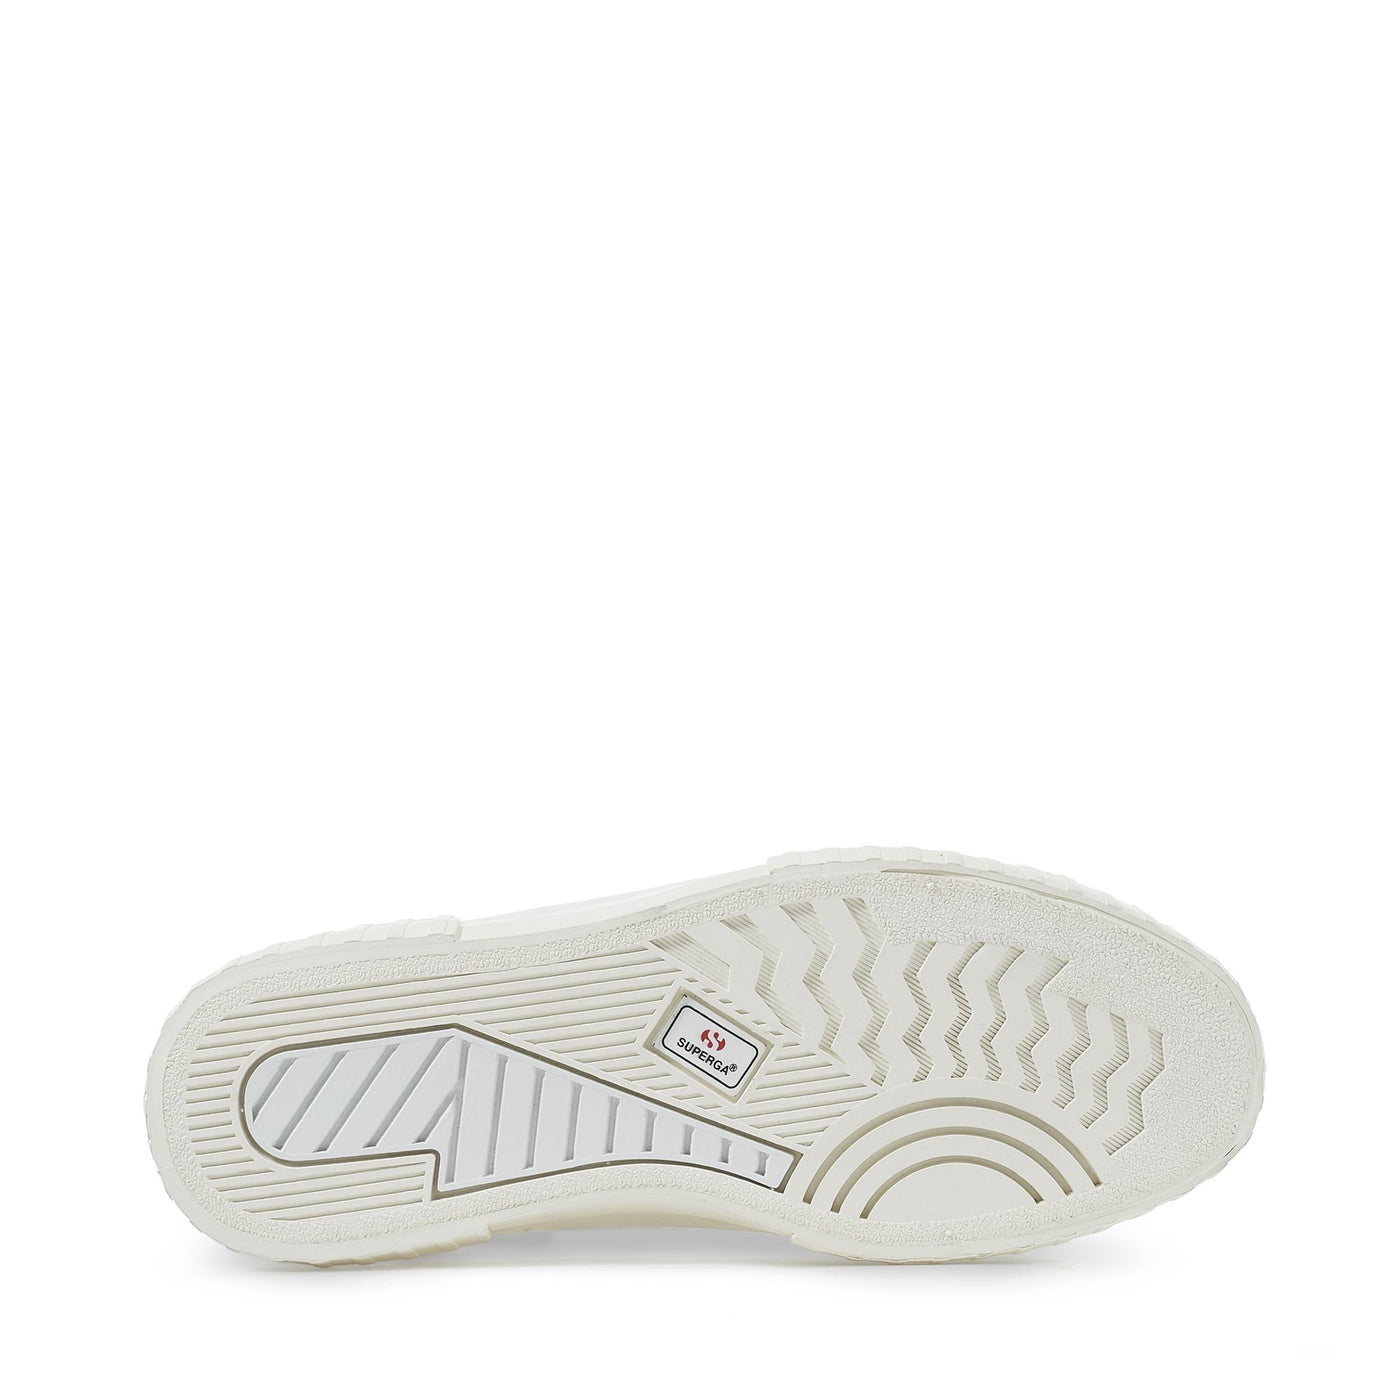 Sneakers Woman 2631 STRIPE PLATFORM Low Cut WHITE-WHITE AVORIO Detail (jpg Rgb)			